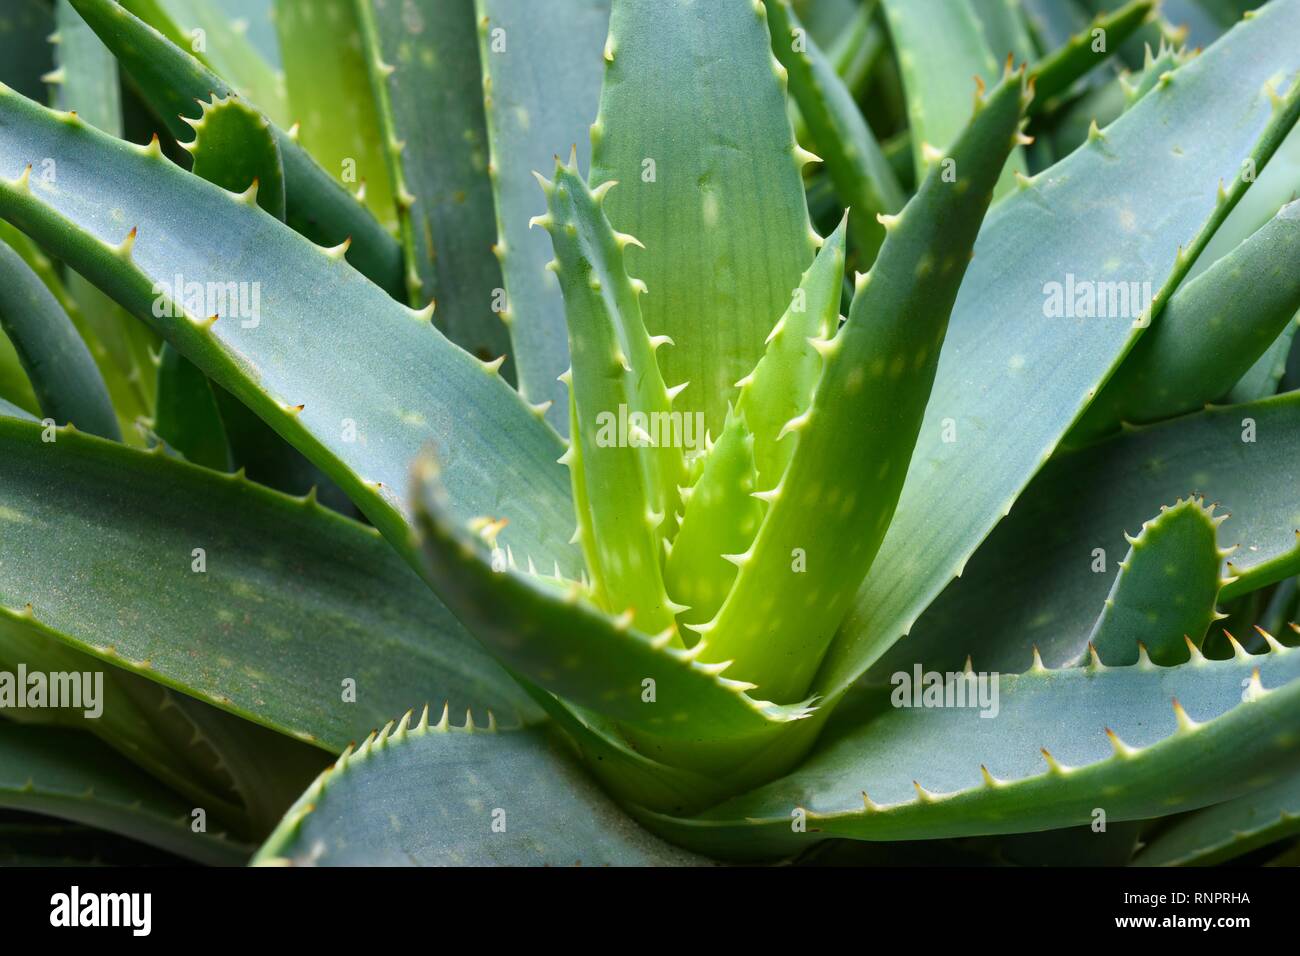 Aloe vera (Aloe vera), detail, Germany Stock Photo